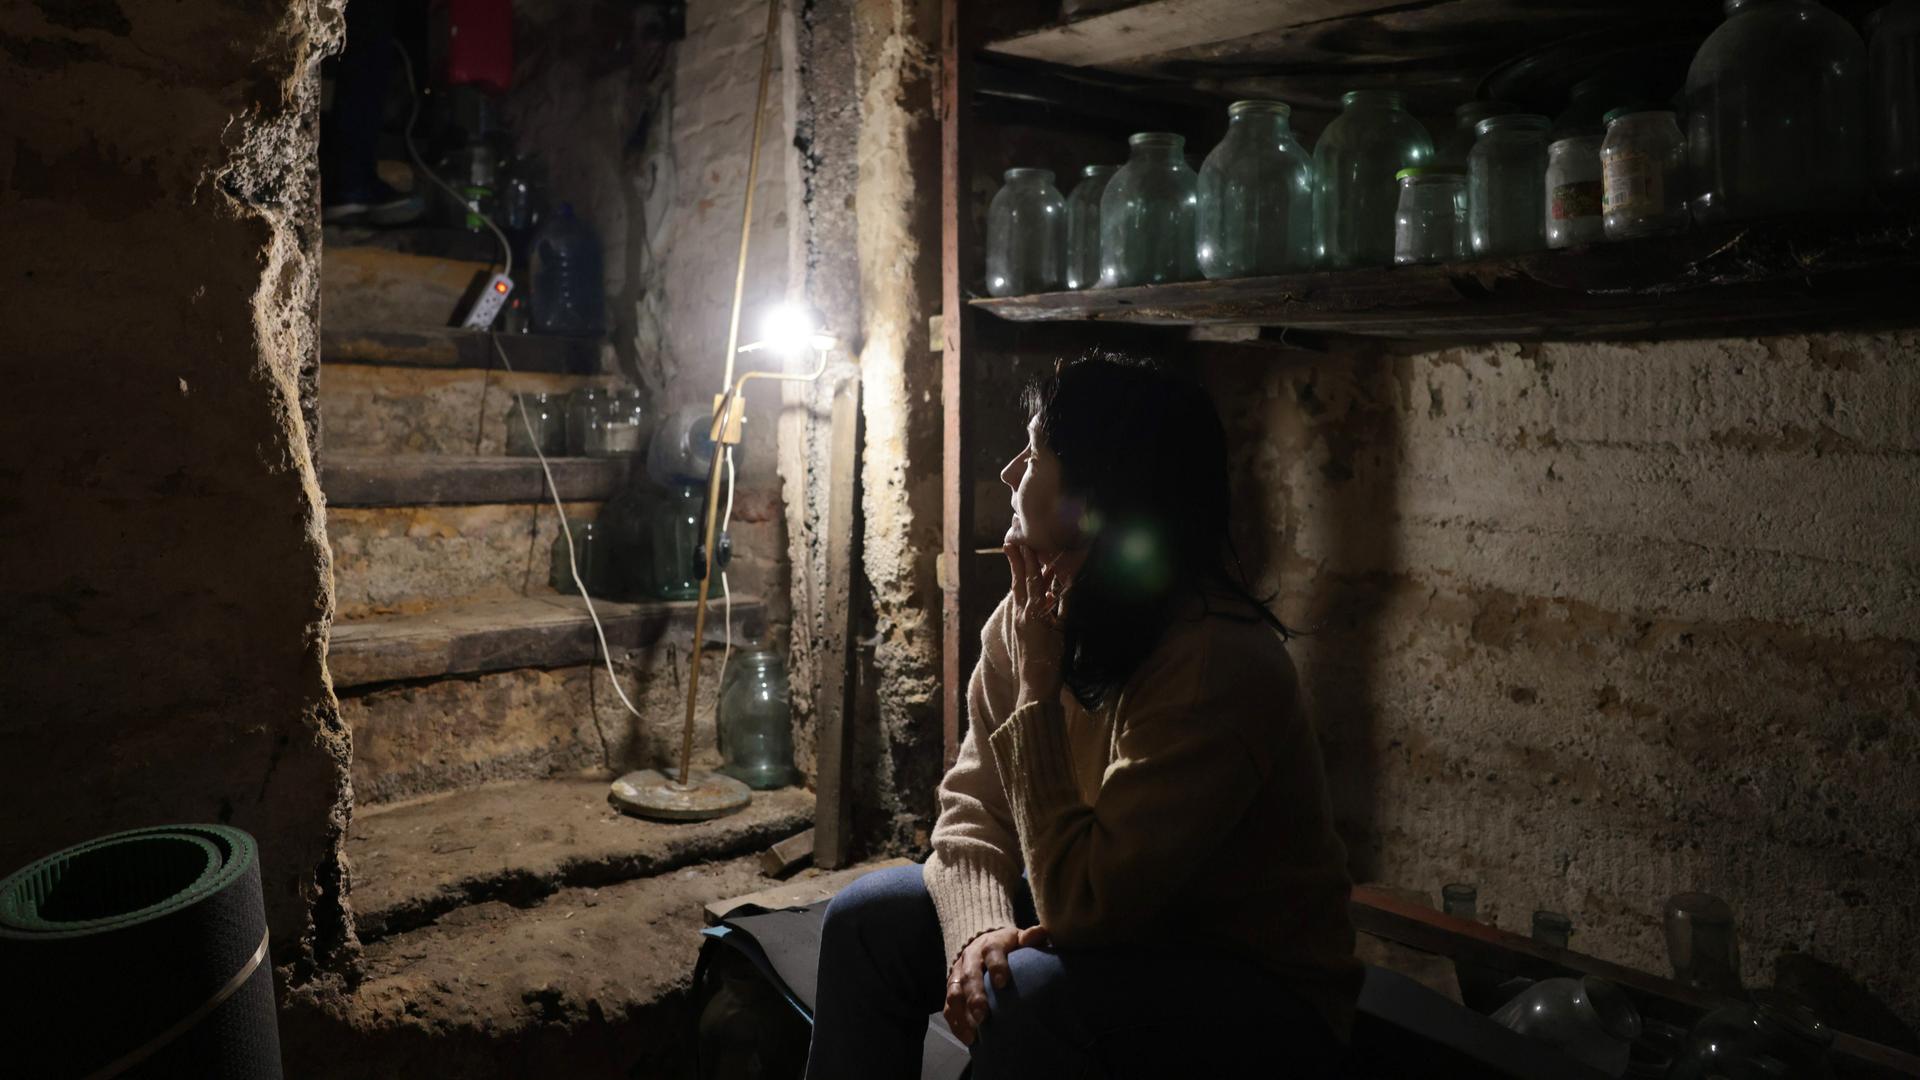 Krieg in der Ukraine. Eine Frau sitzt in ihrem Keller im Schein einer kleinen Lampe und wartet auf das Ende der Kämpfe. Avdeyevka, Ukraine, 2022.